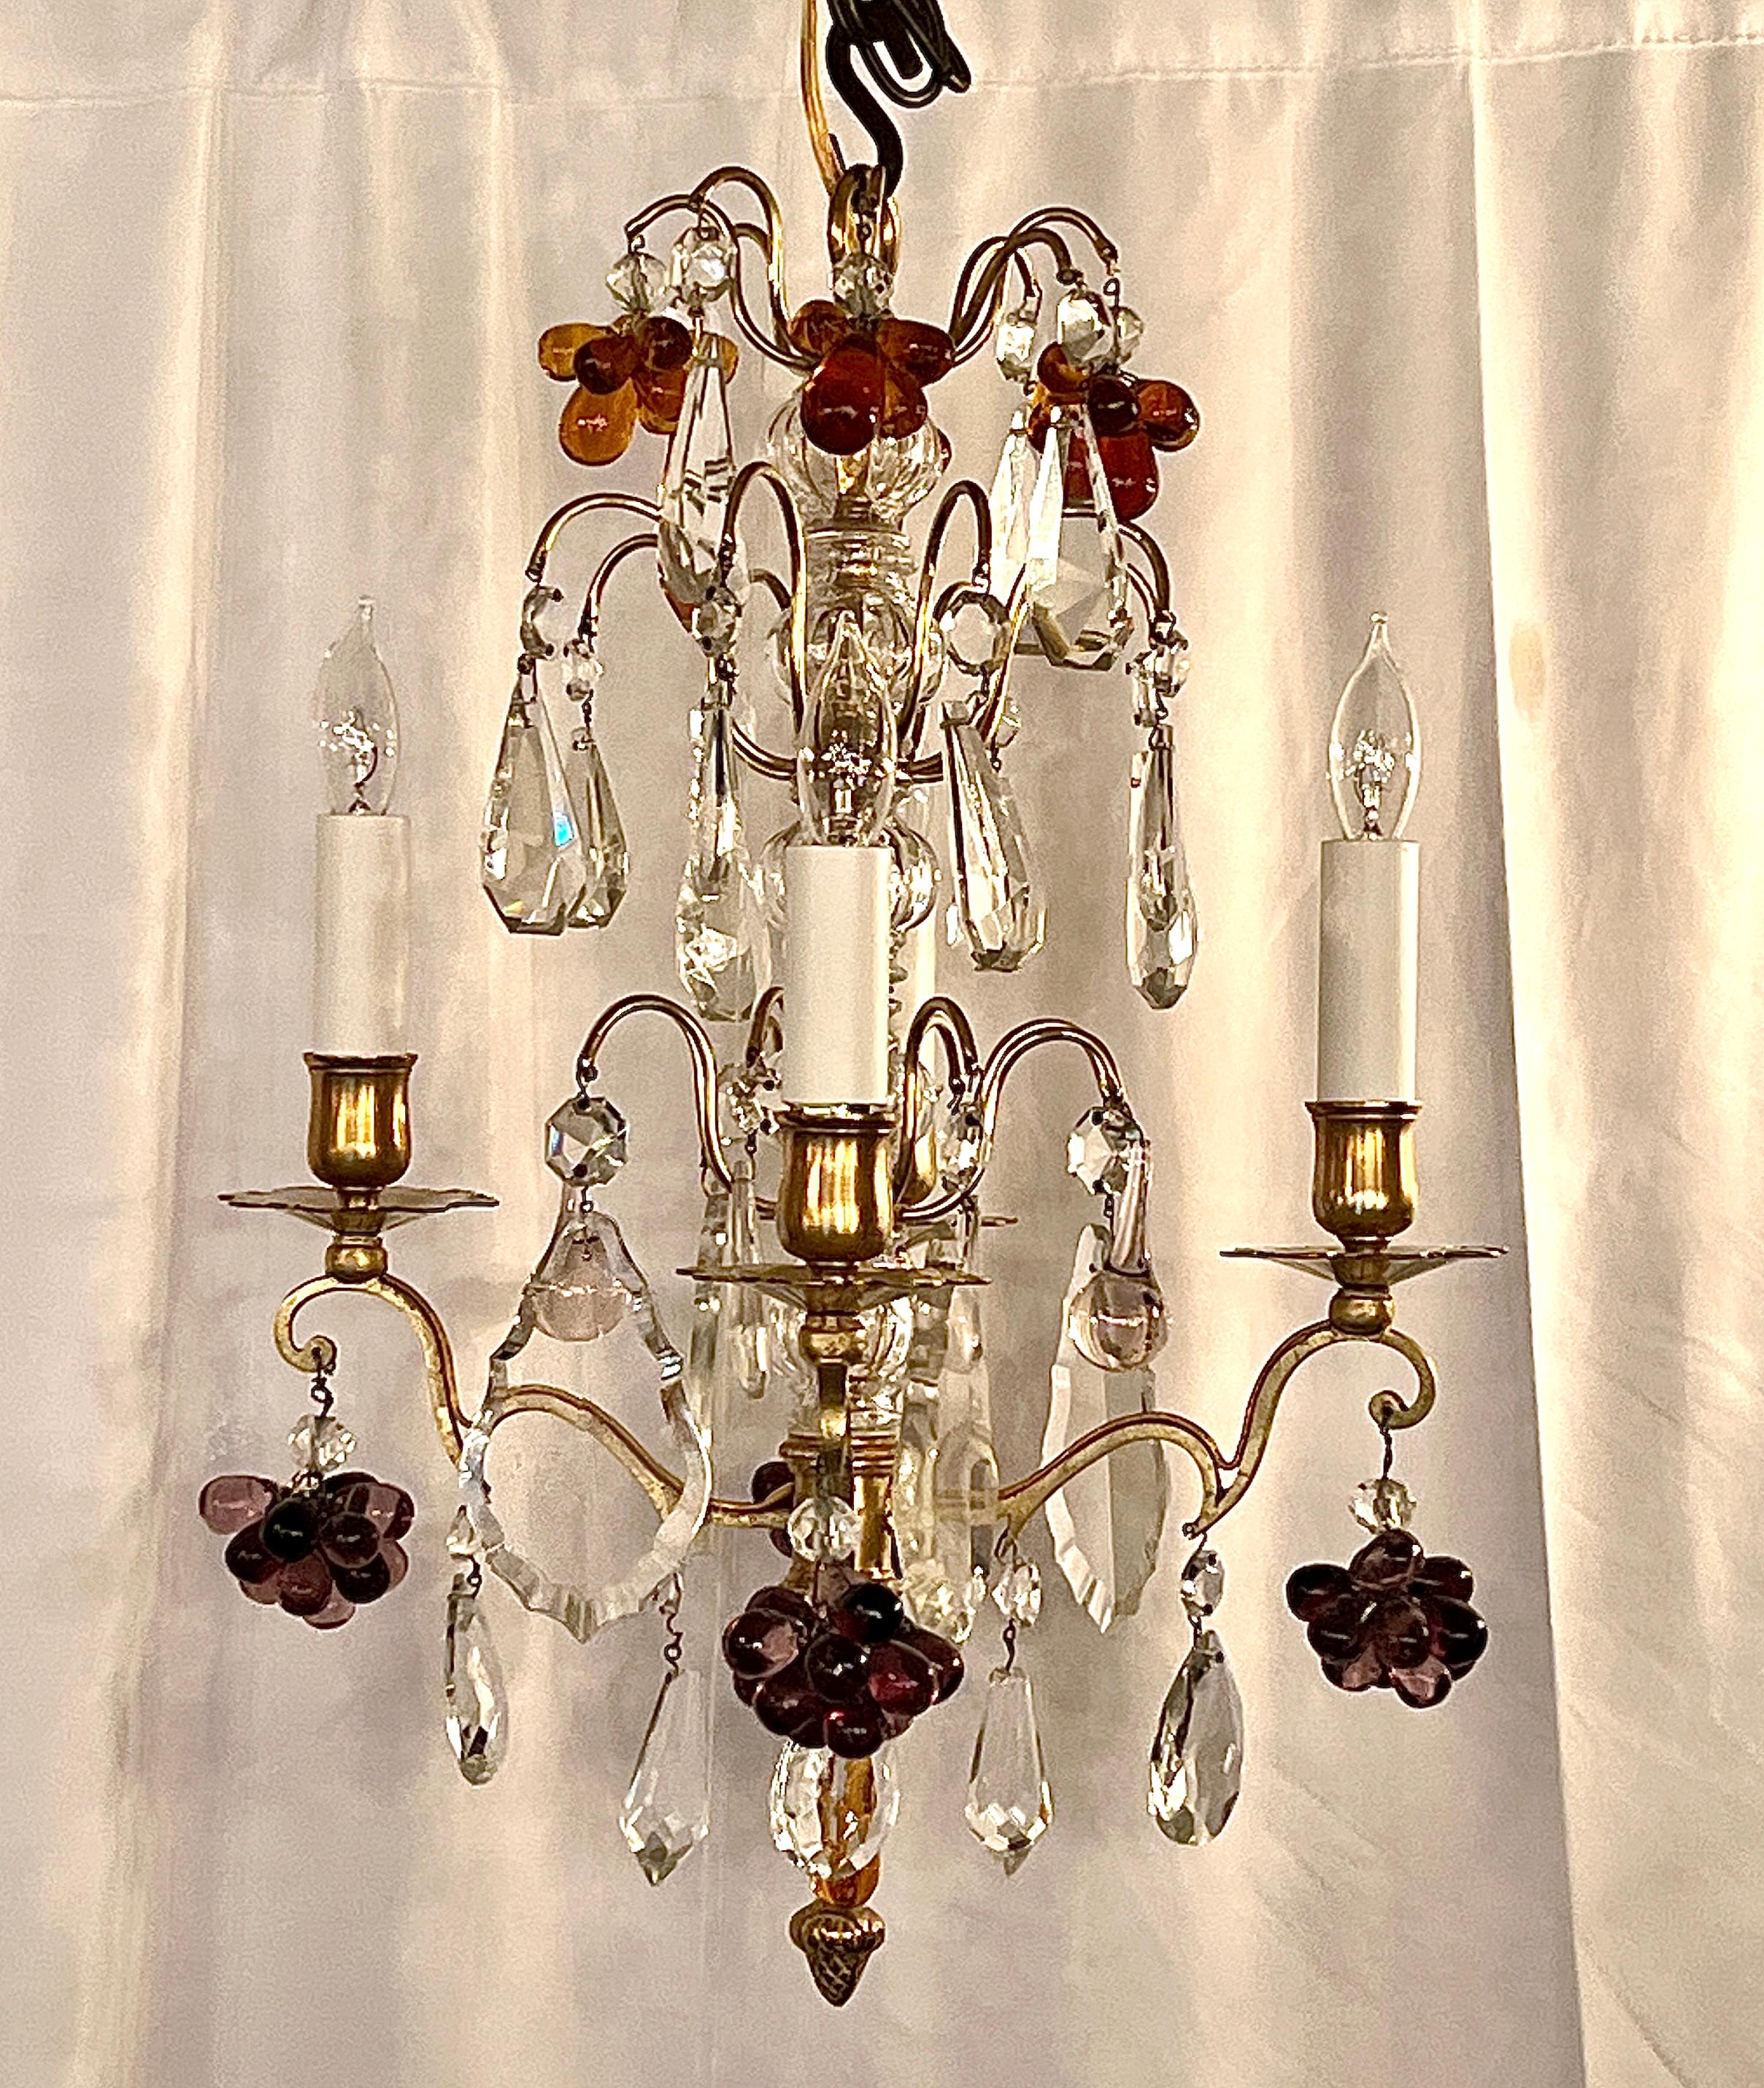 Paire de lustres anciens en bronze et cristal de Baccarat, vers 1890
Lustres doux et petits avec des cristaux colorés, des cristaux clairs et une tige en cristal taillé sur une monture en bronze doré.
